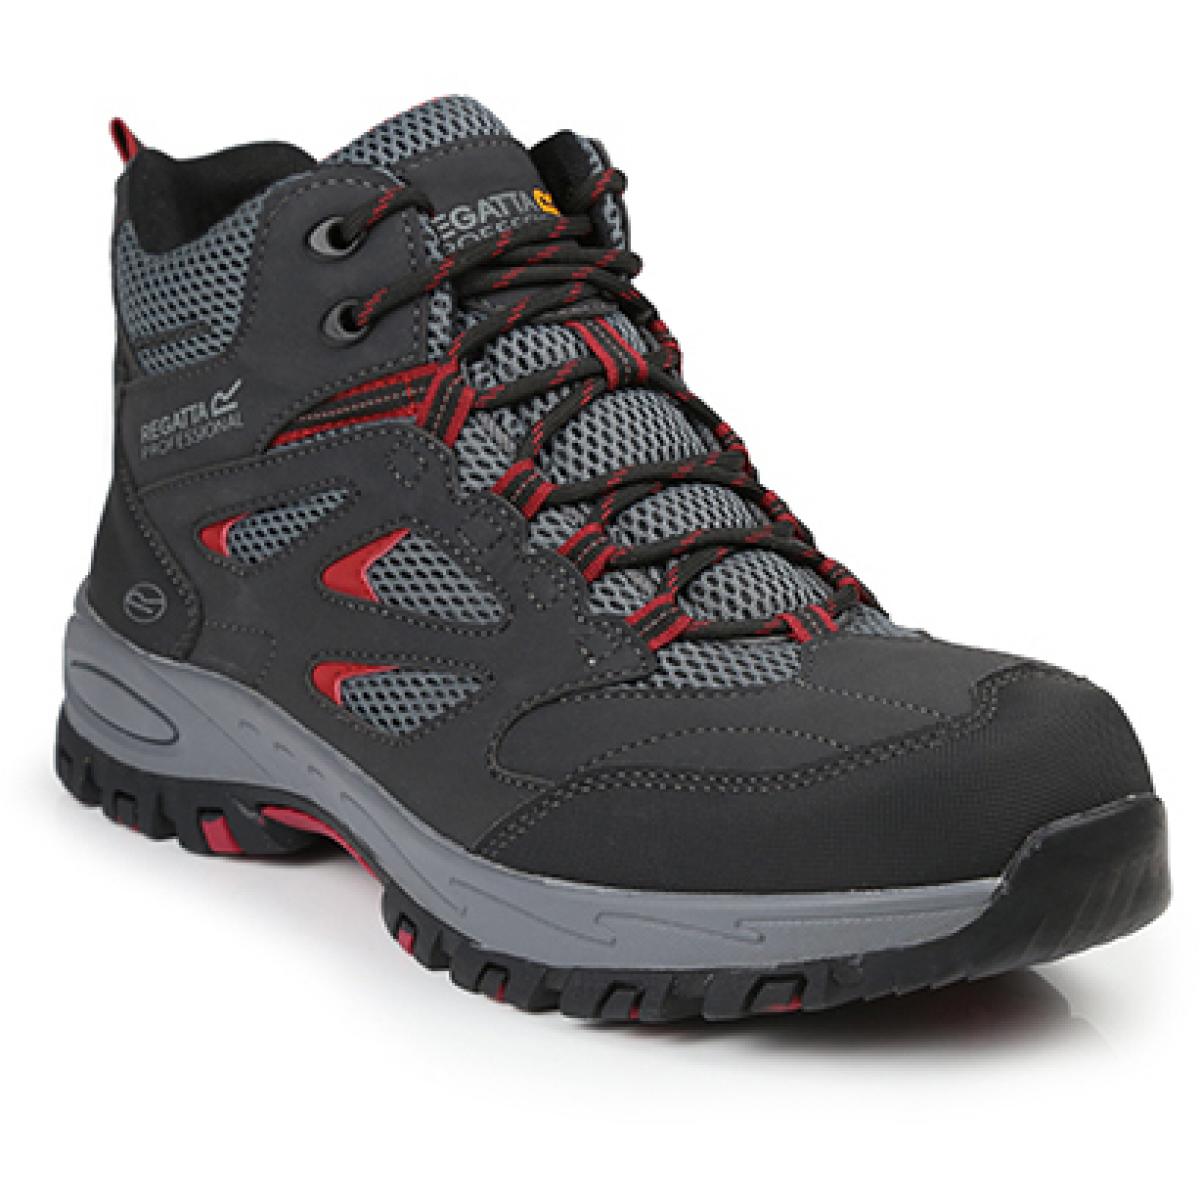 Hersteller: Regatta Safety Footwear Herstellernummer: TRK201 Artikelbezeichnung: Mudstone SBP Safety Hiker - Arbeitsschuhe Farbe: Ash/Rio Red